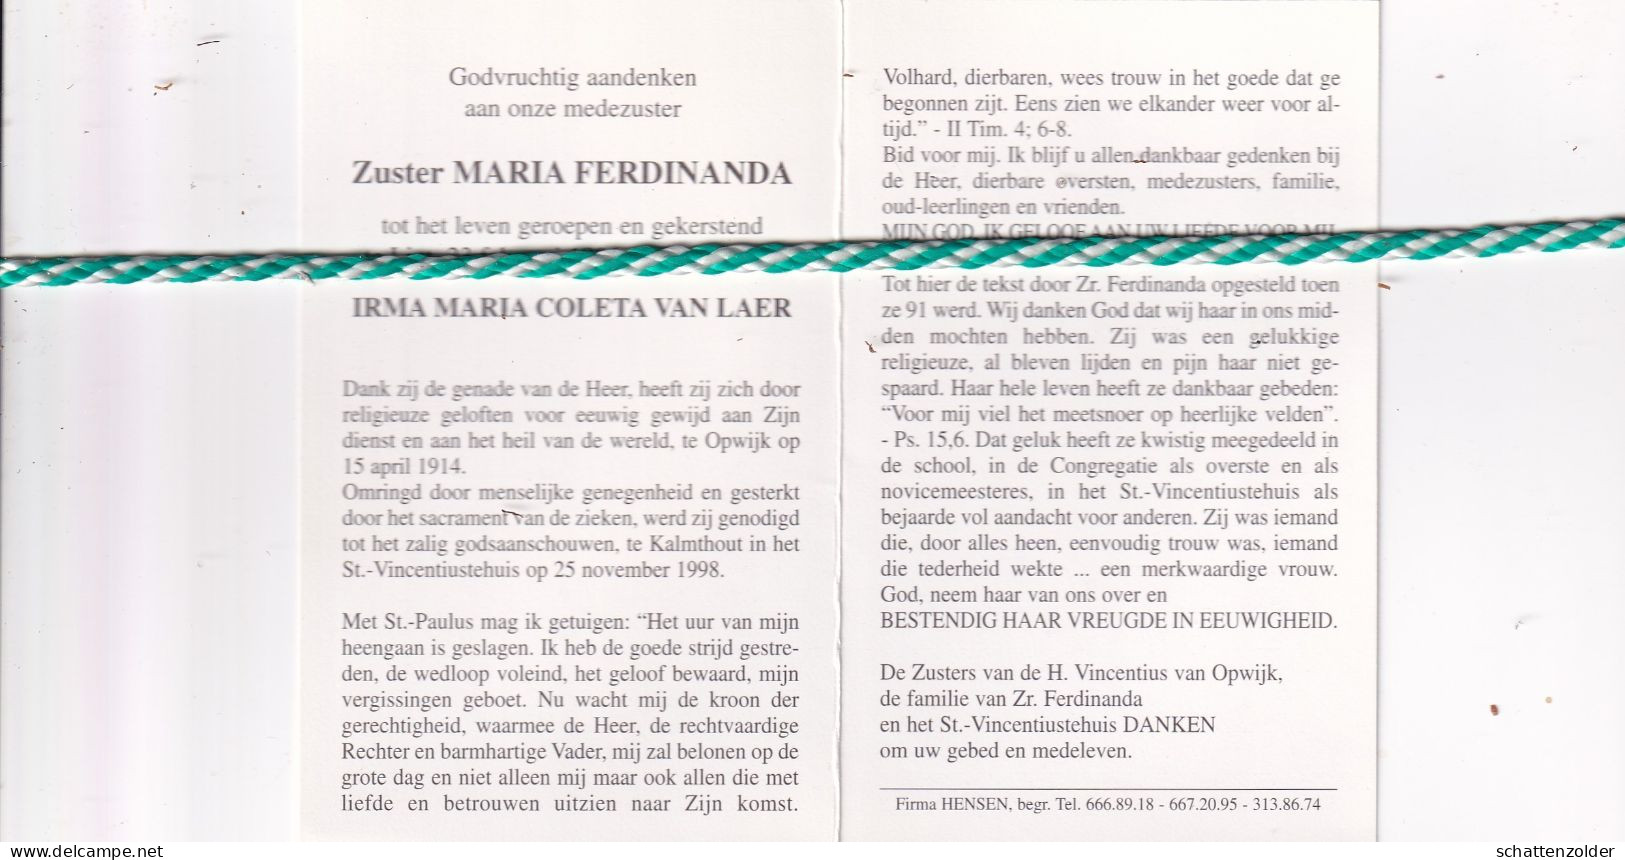 Zuster Maria Ferdinanda (Irma Maria Coleta Van Laer), Lint 1896, Kalmthout 1998. Honderdjarige - Overlijden